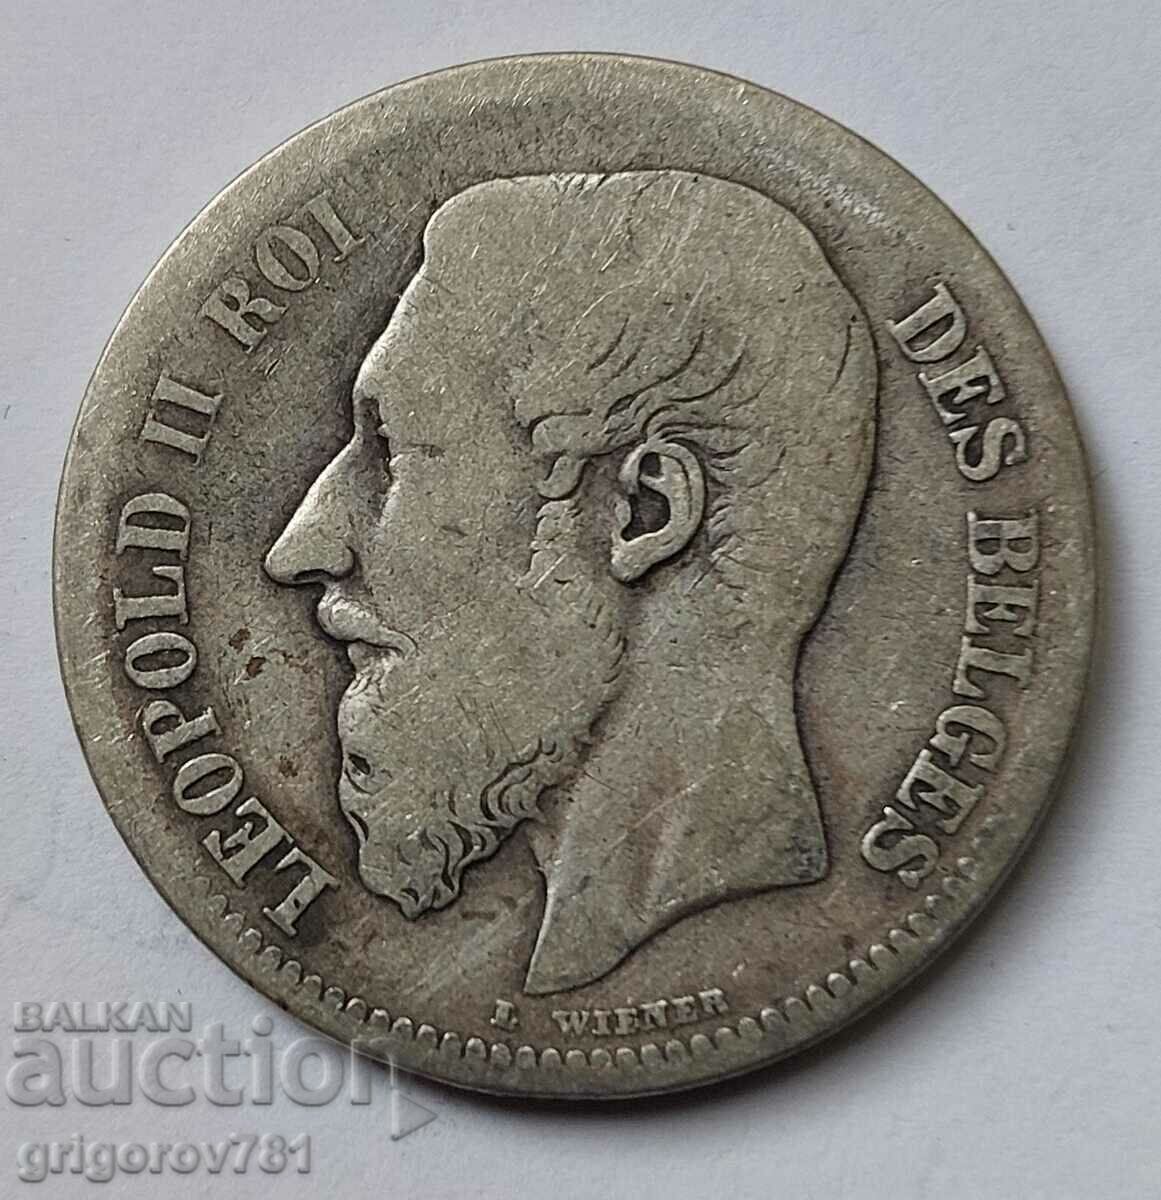 2 Francs Silver Belgium 1867 - Silver Coin #163